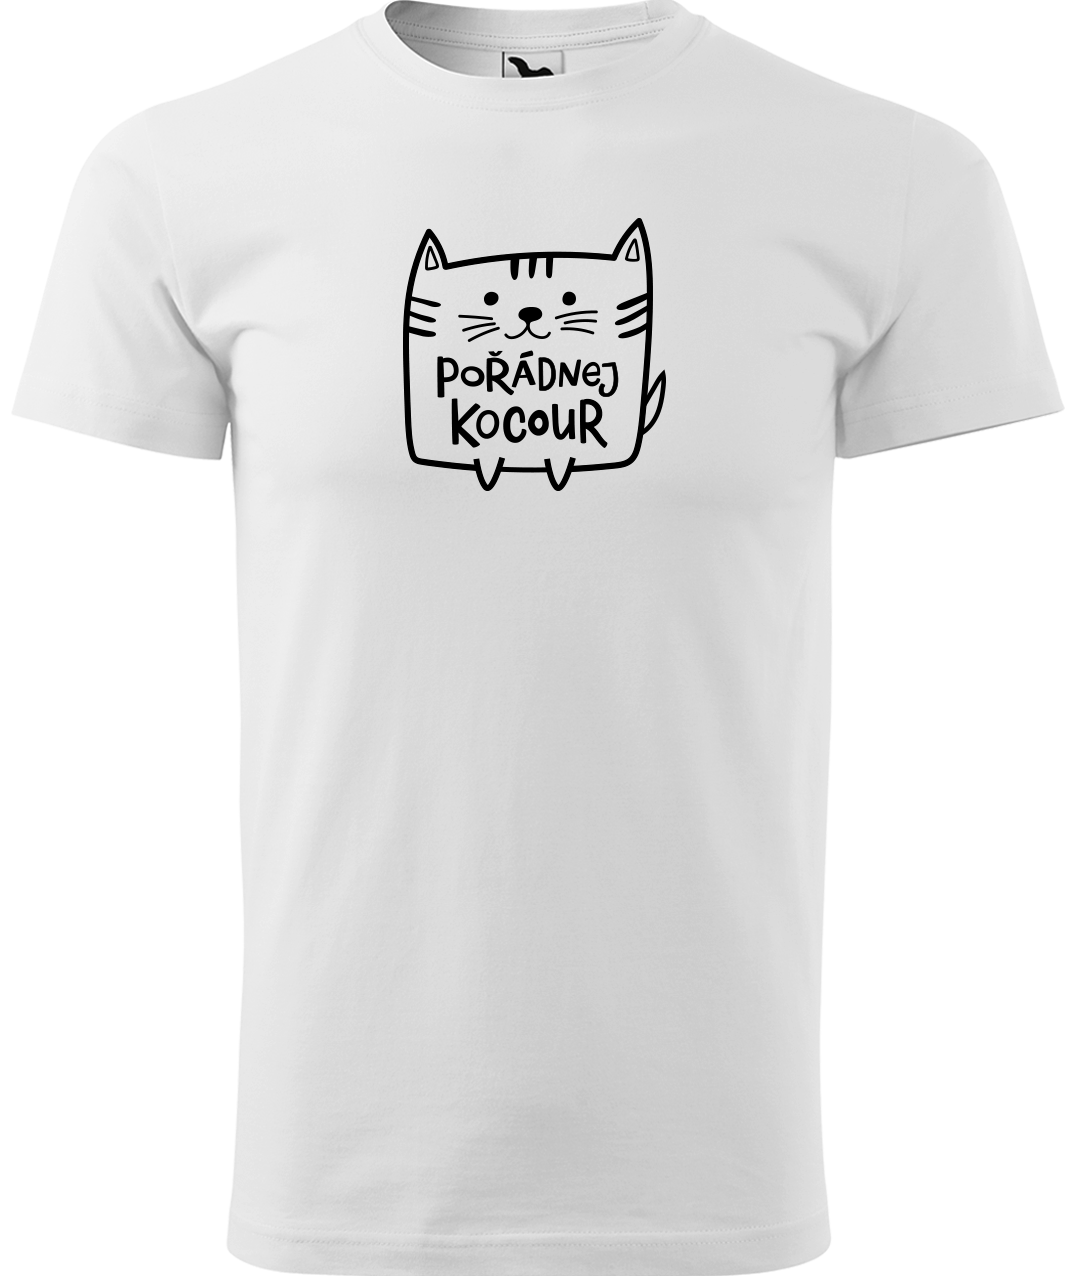 Pánské tričko s kočkou - Pořádnej kocour Velikost: M, Barva: Bílá (00)